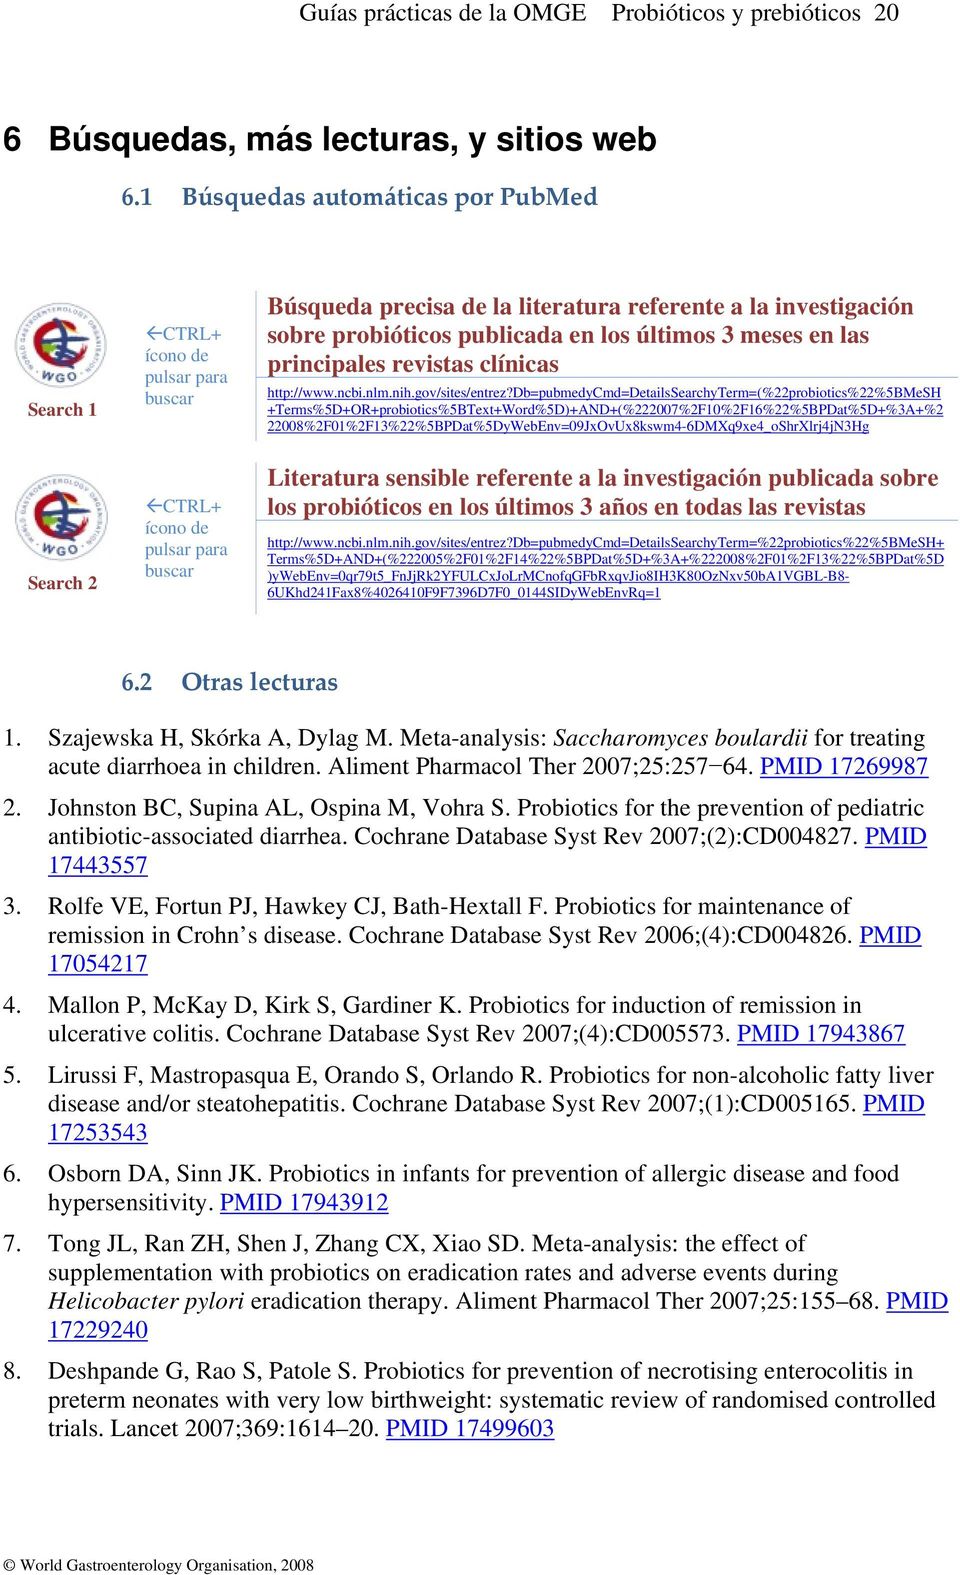 probióticos publicada en los últimos 3 meses en las principales revistas clínicas http://www.ncbi.nlm.nih.gov/sites/entrez?